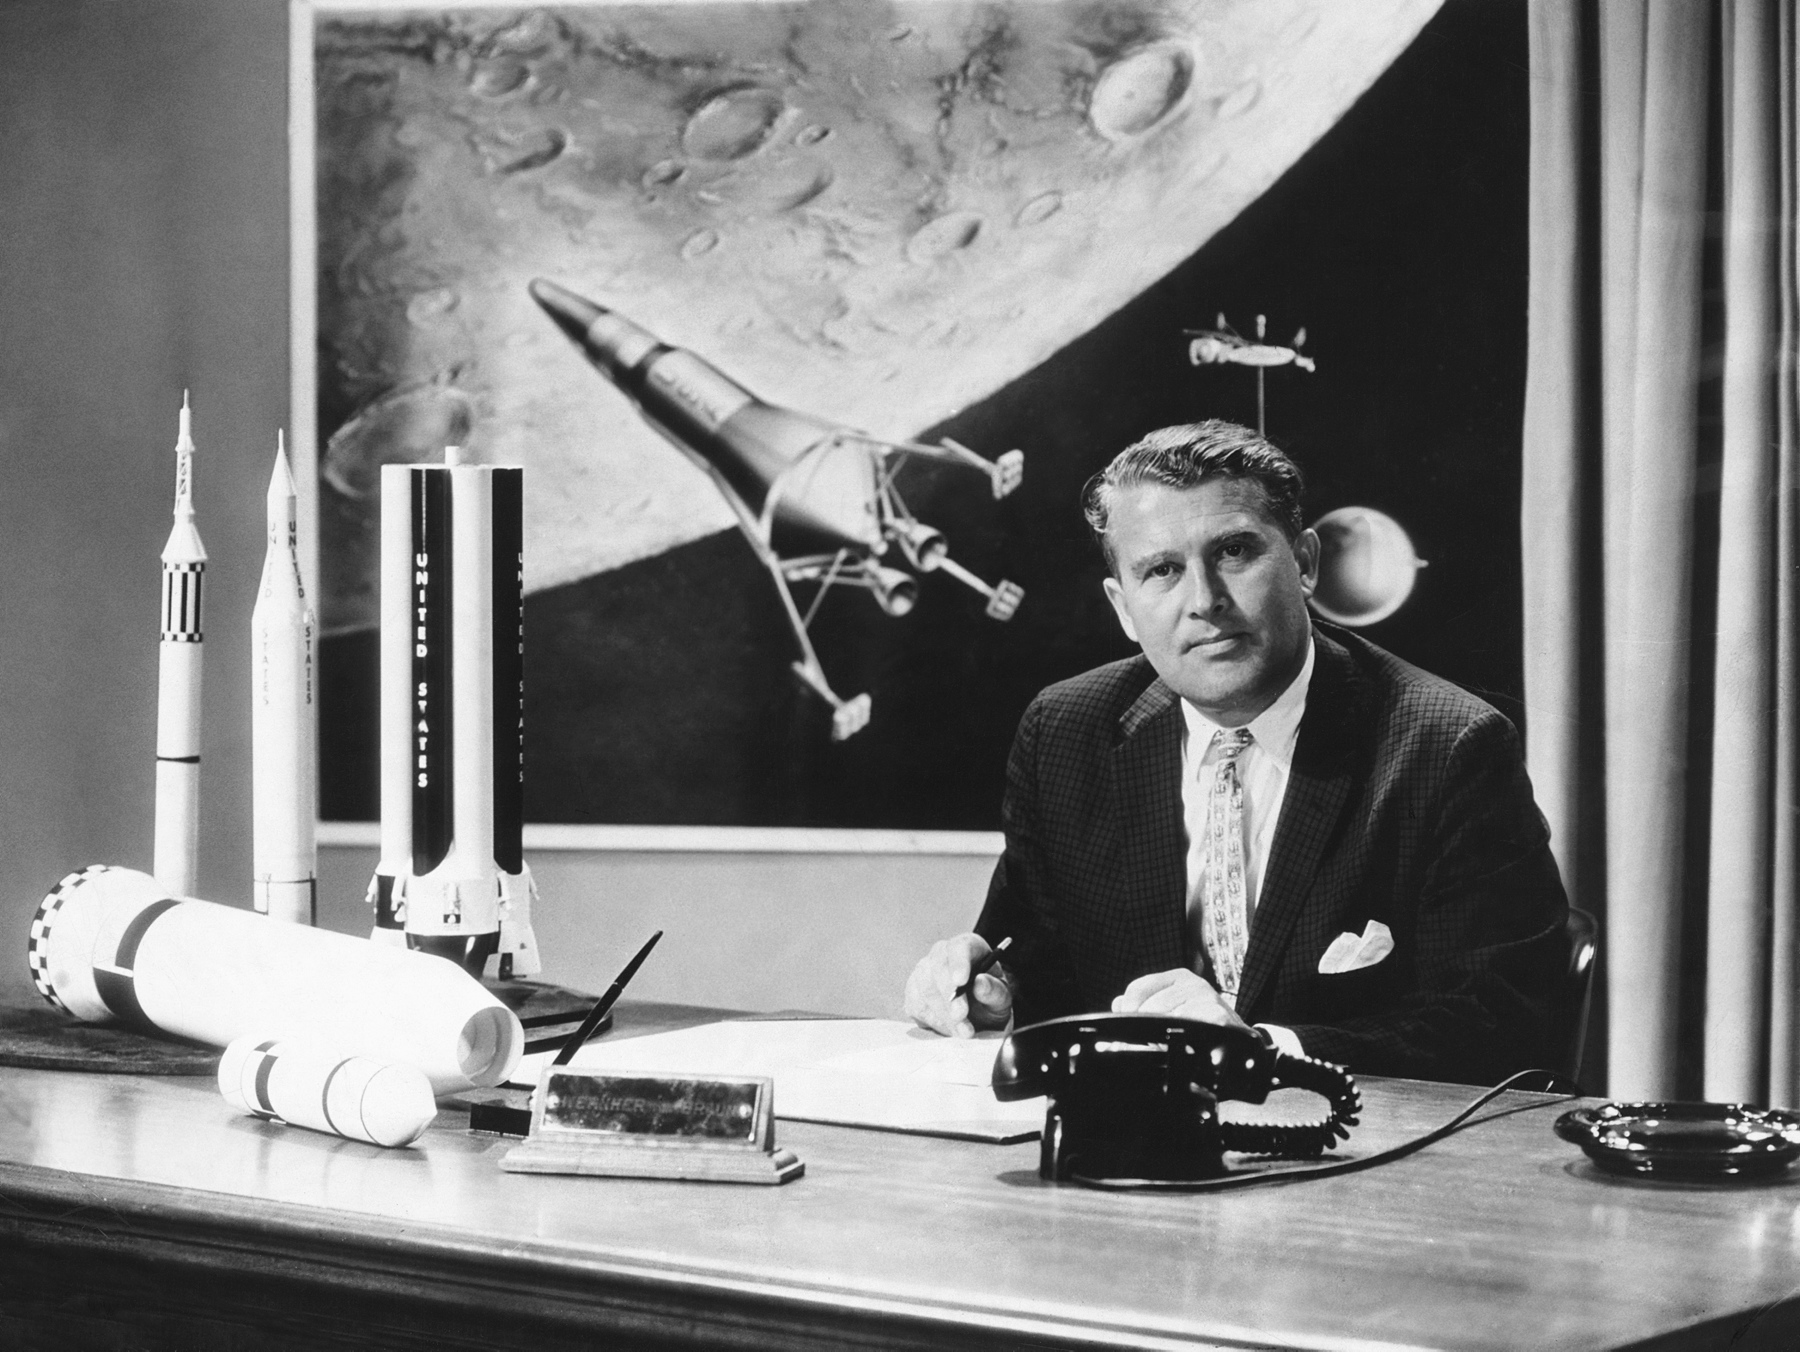 Werner von Braun – twórca rakiety V-2. W oparciu o jego wiedzę i pracę Amerykanie stworzyli projekty wszystkich rakiet wojskowych i kosmicznych. Na zdjęciu w 1958 r. w trakcie uruchamiania programu wystrzelenia pierwszego amerykańskiego sztucznego satelity Explorer 1